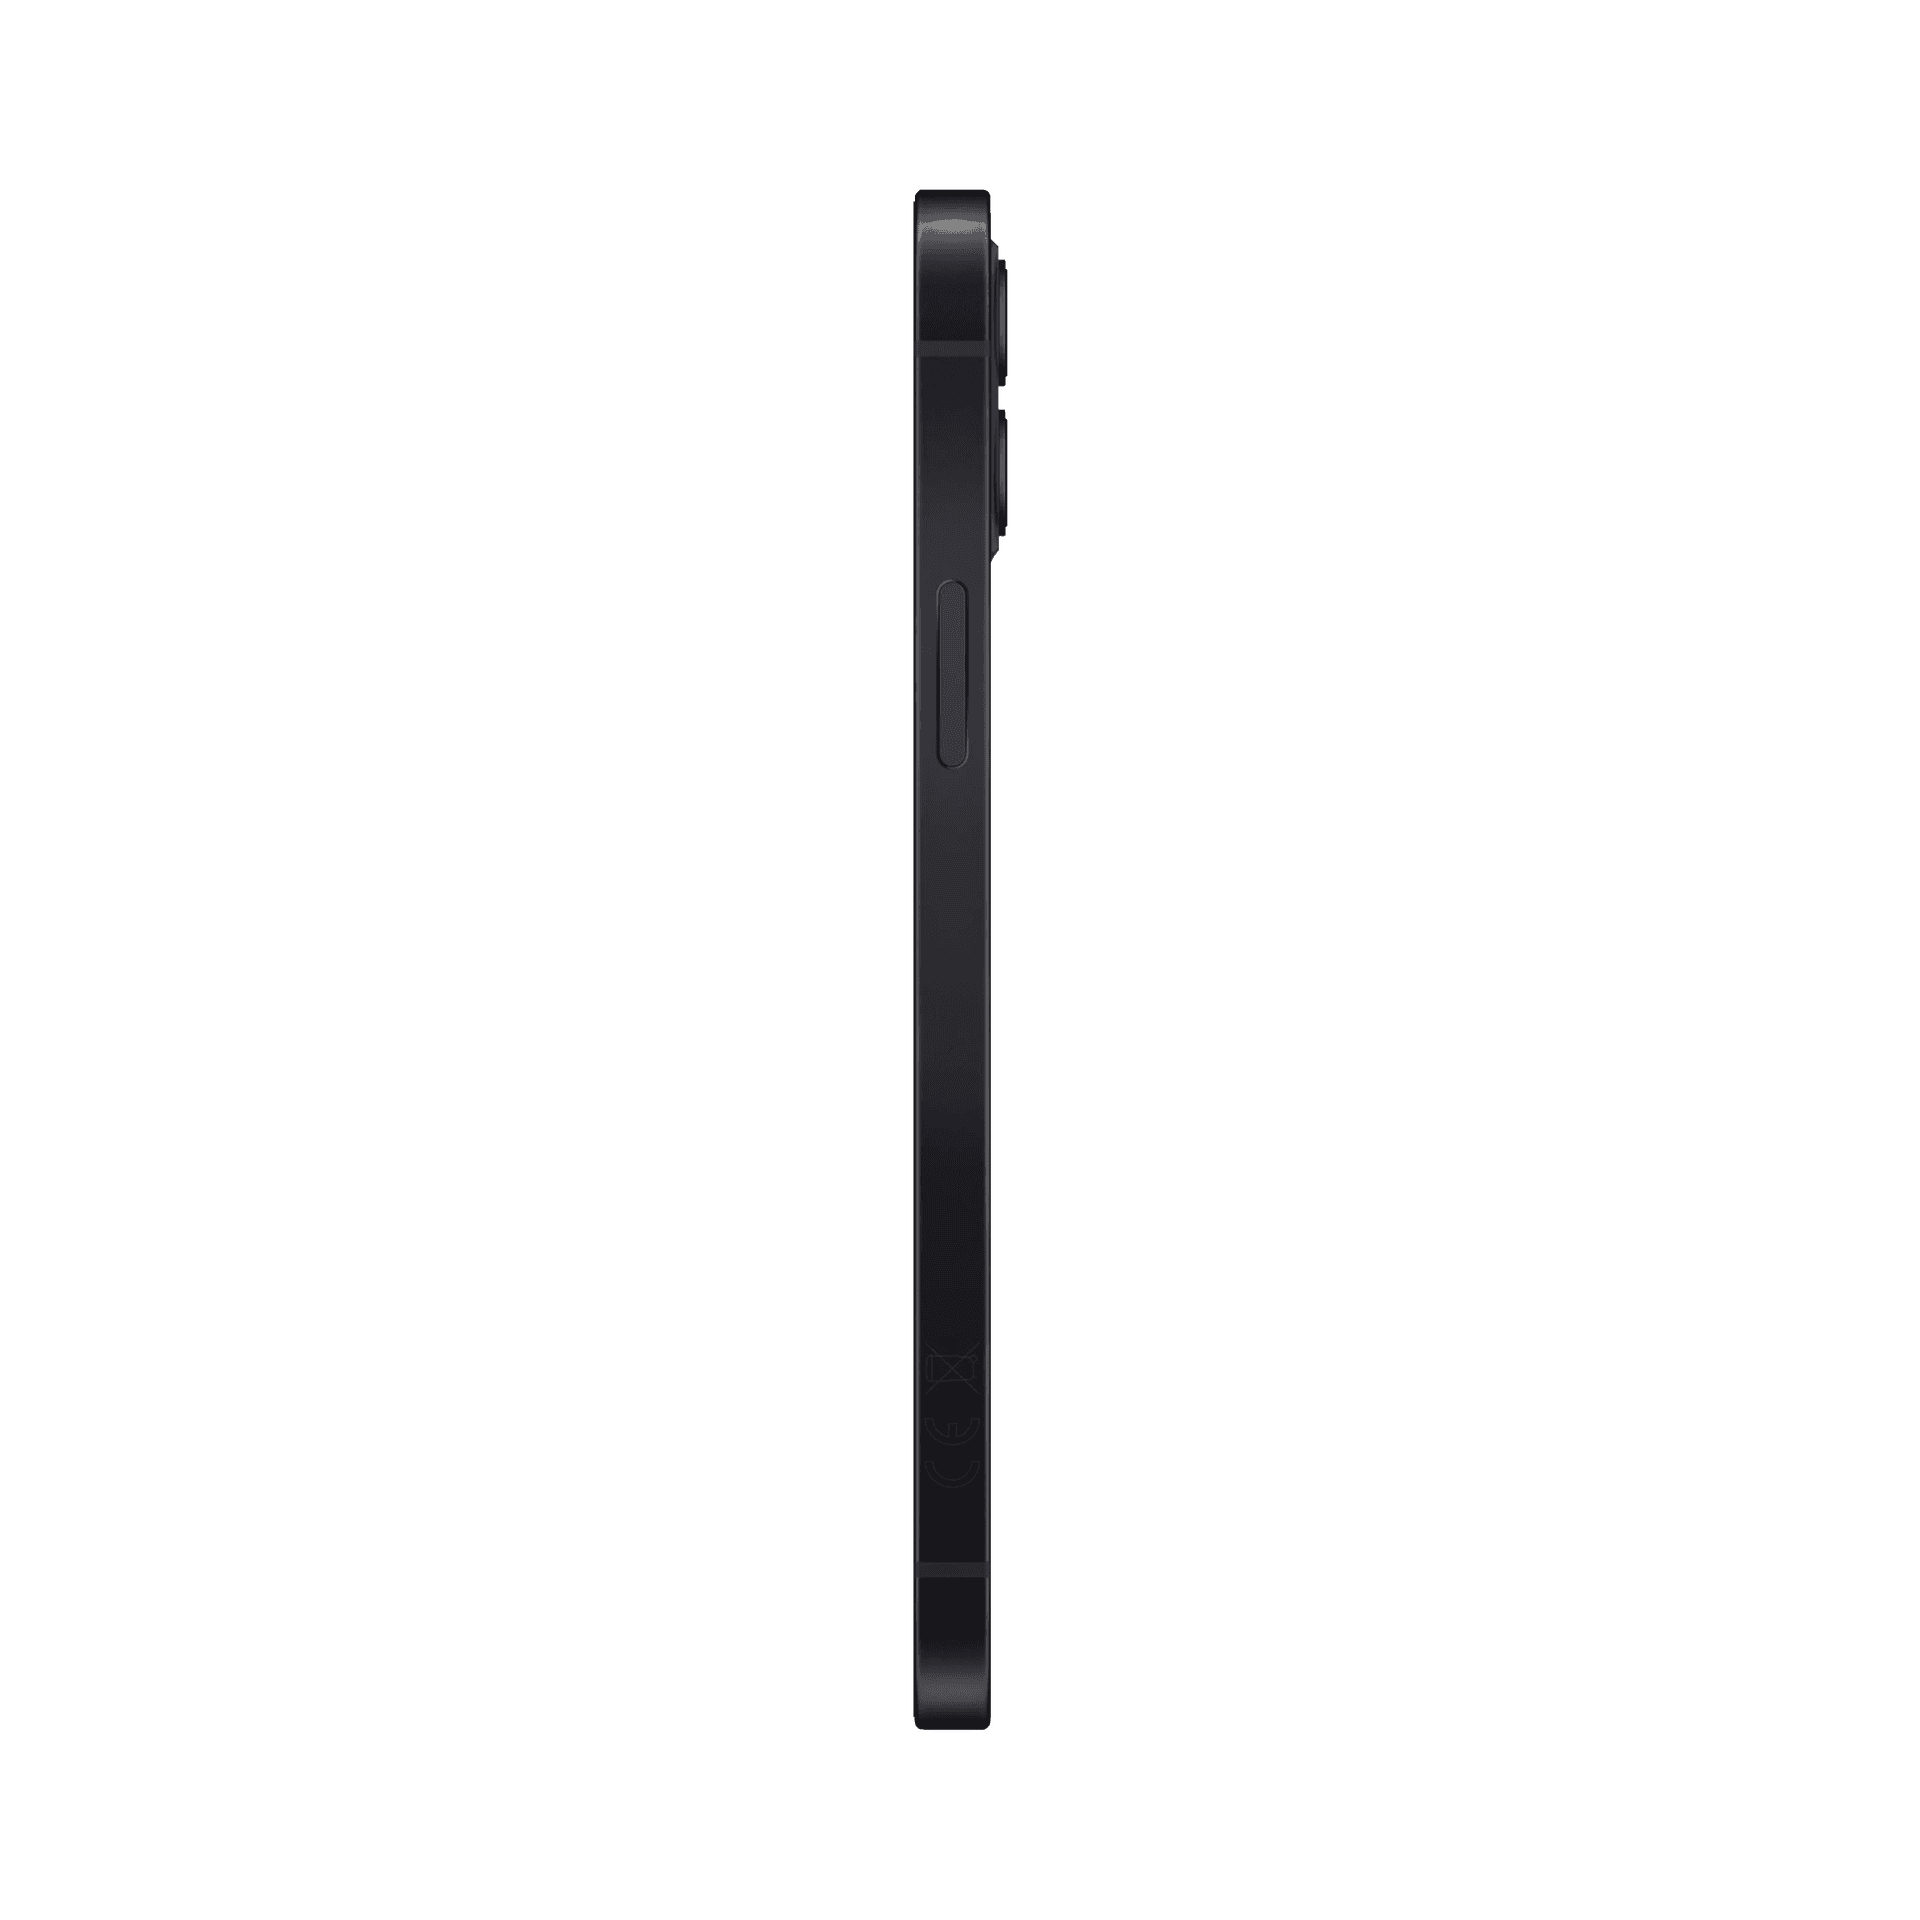 Apple iPhone 12 Mini - 64 GB - Siyah